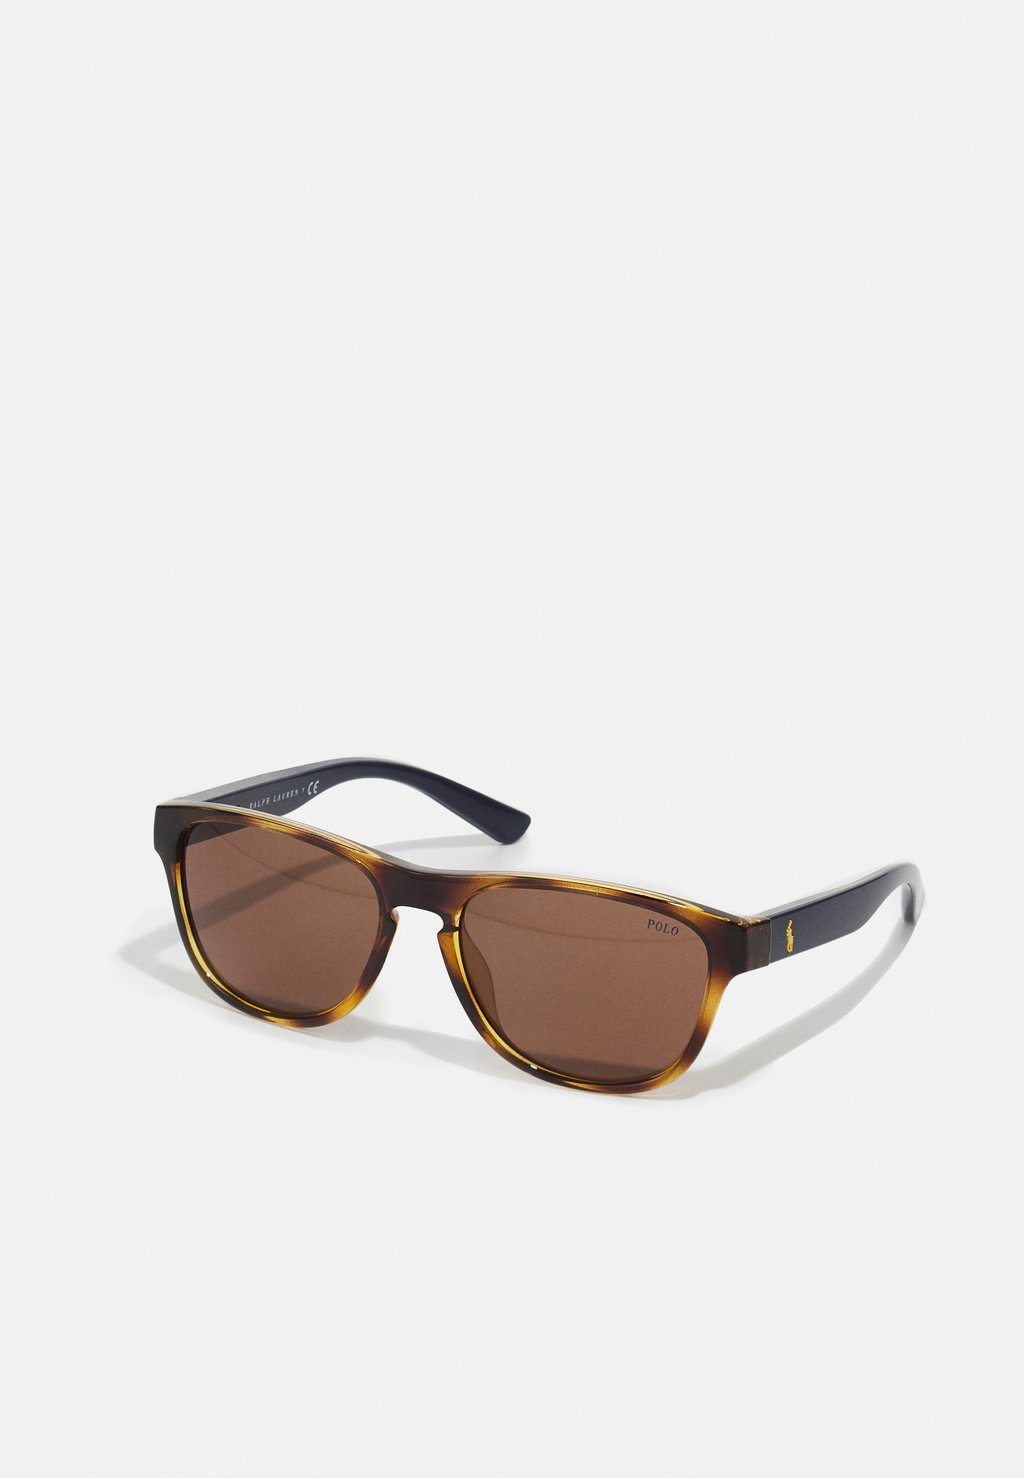 Солнцезащитные очки Polo Ralph Lauren, коричневый мужские солнцезащитные очки polo ph4187 ralph lauren блестящее платье гордон коричневый